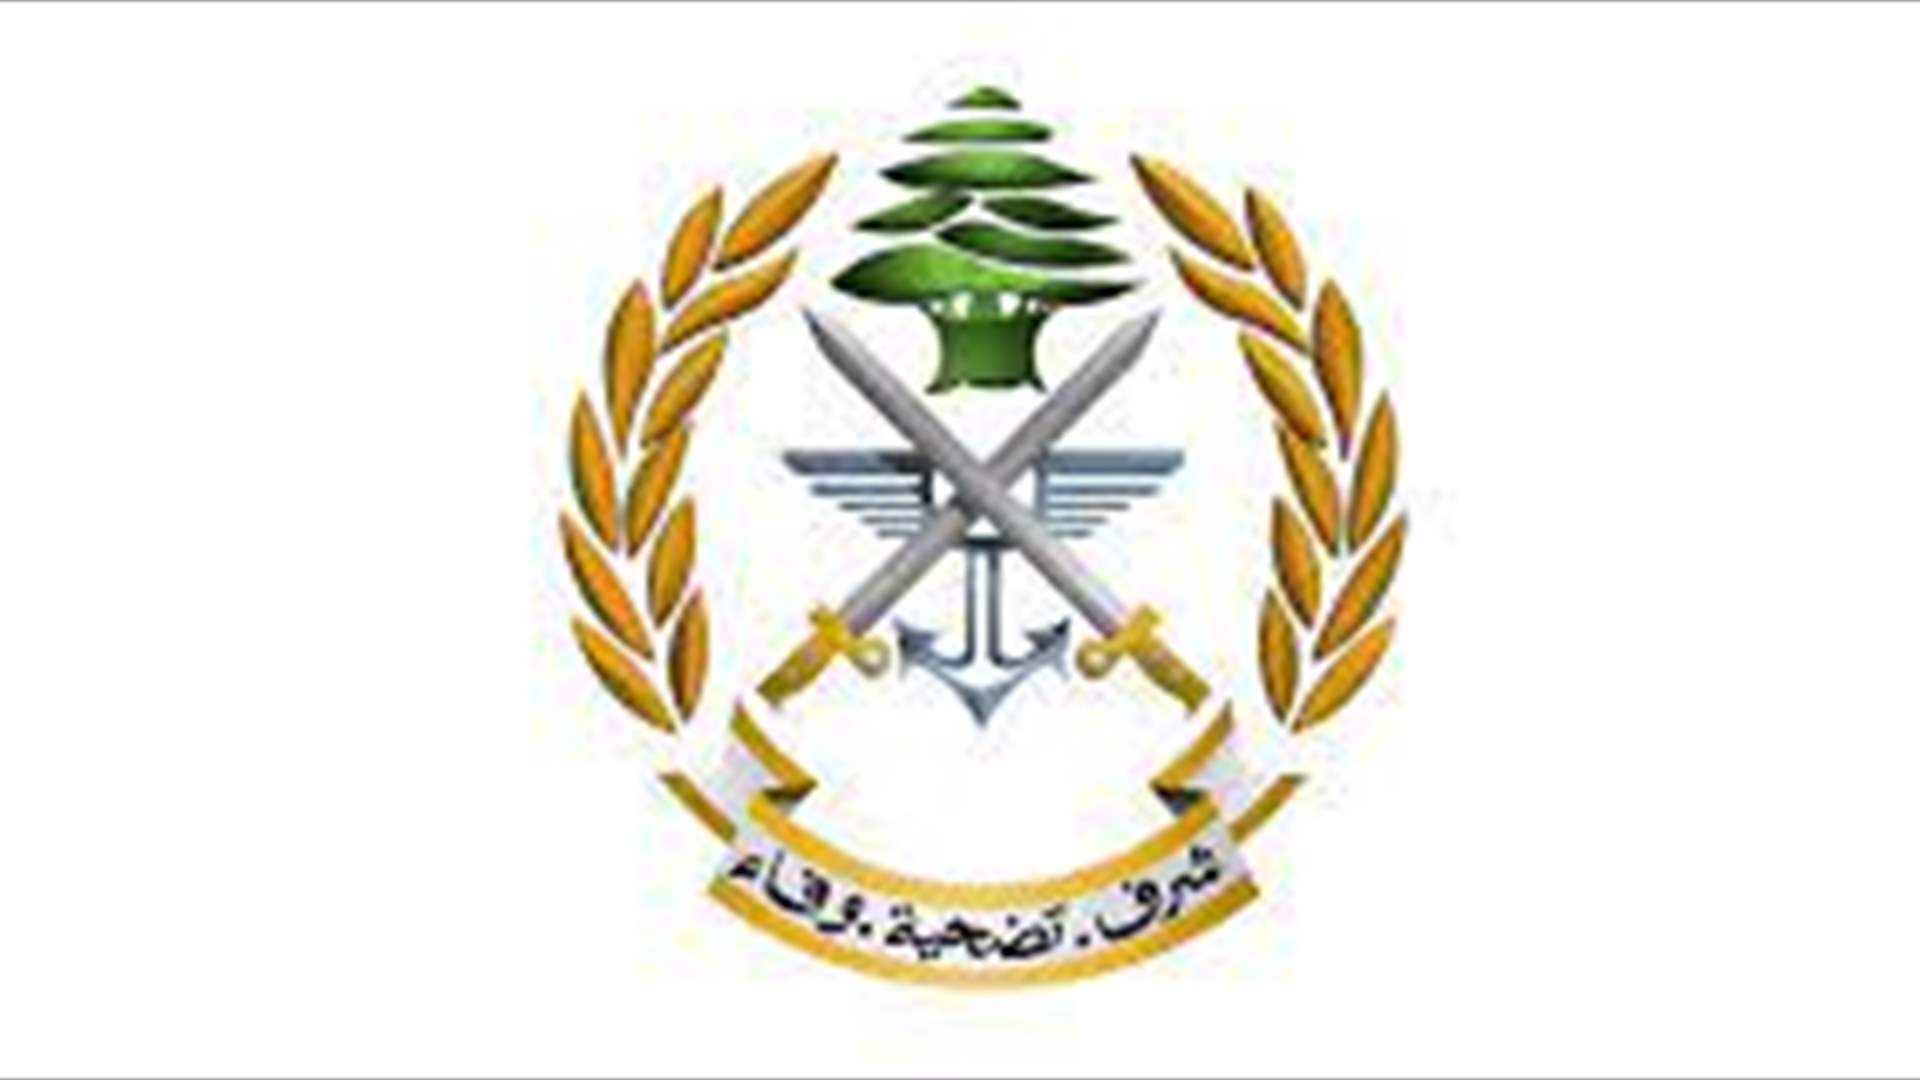 الجيش: توقيف أعضاء شبكة إجرامية تنشط في أعمال نصب واحتيال بين لبنان وإحدى الدول الأوروبية